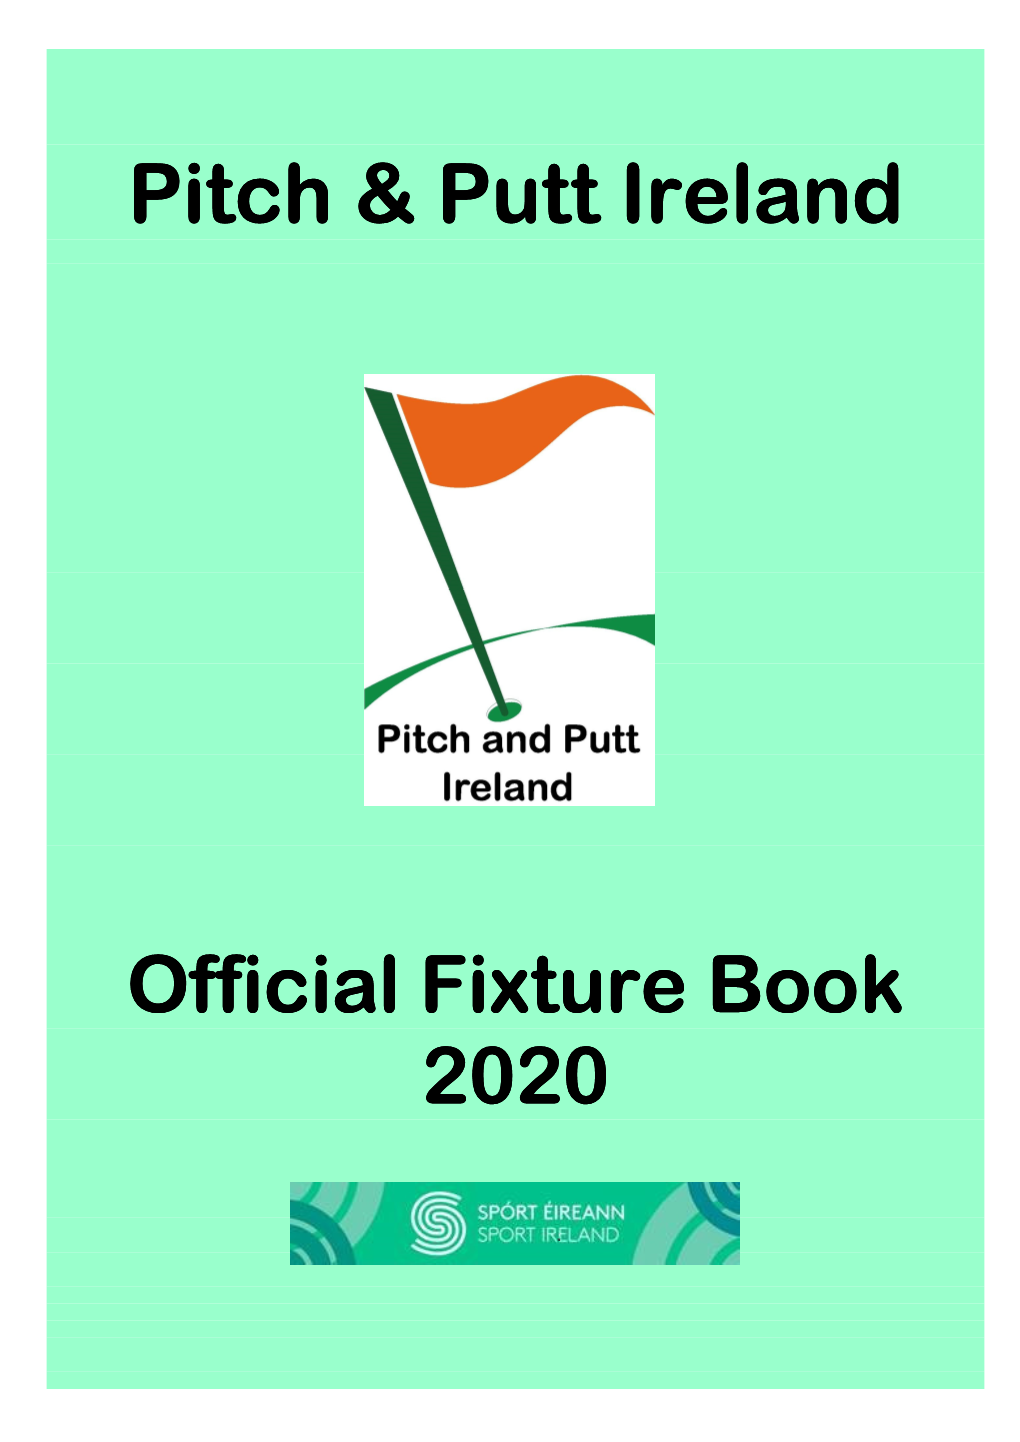 Pitch & Putt Ireland